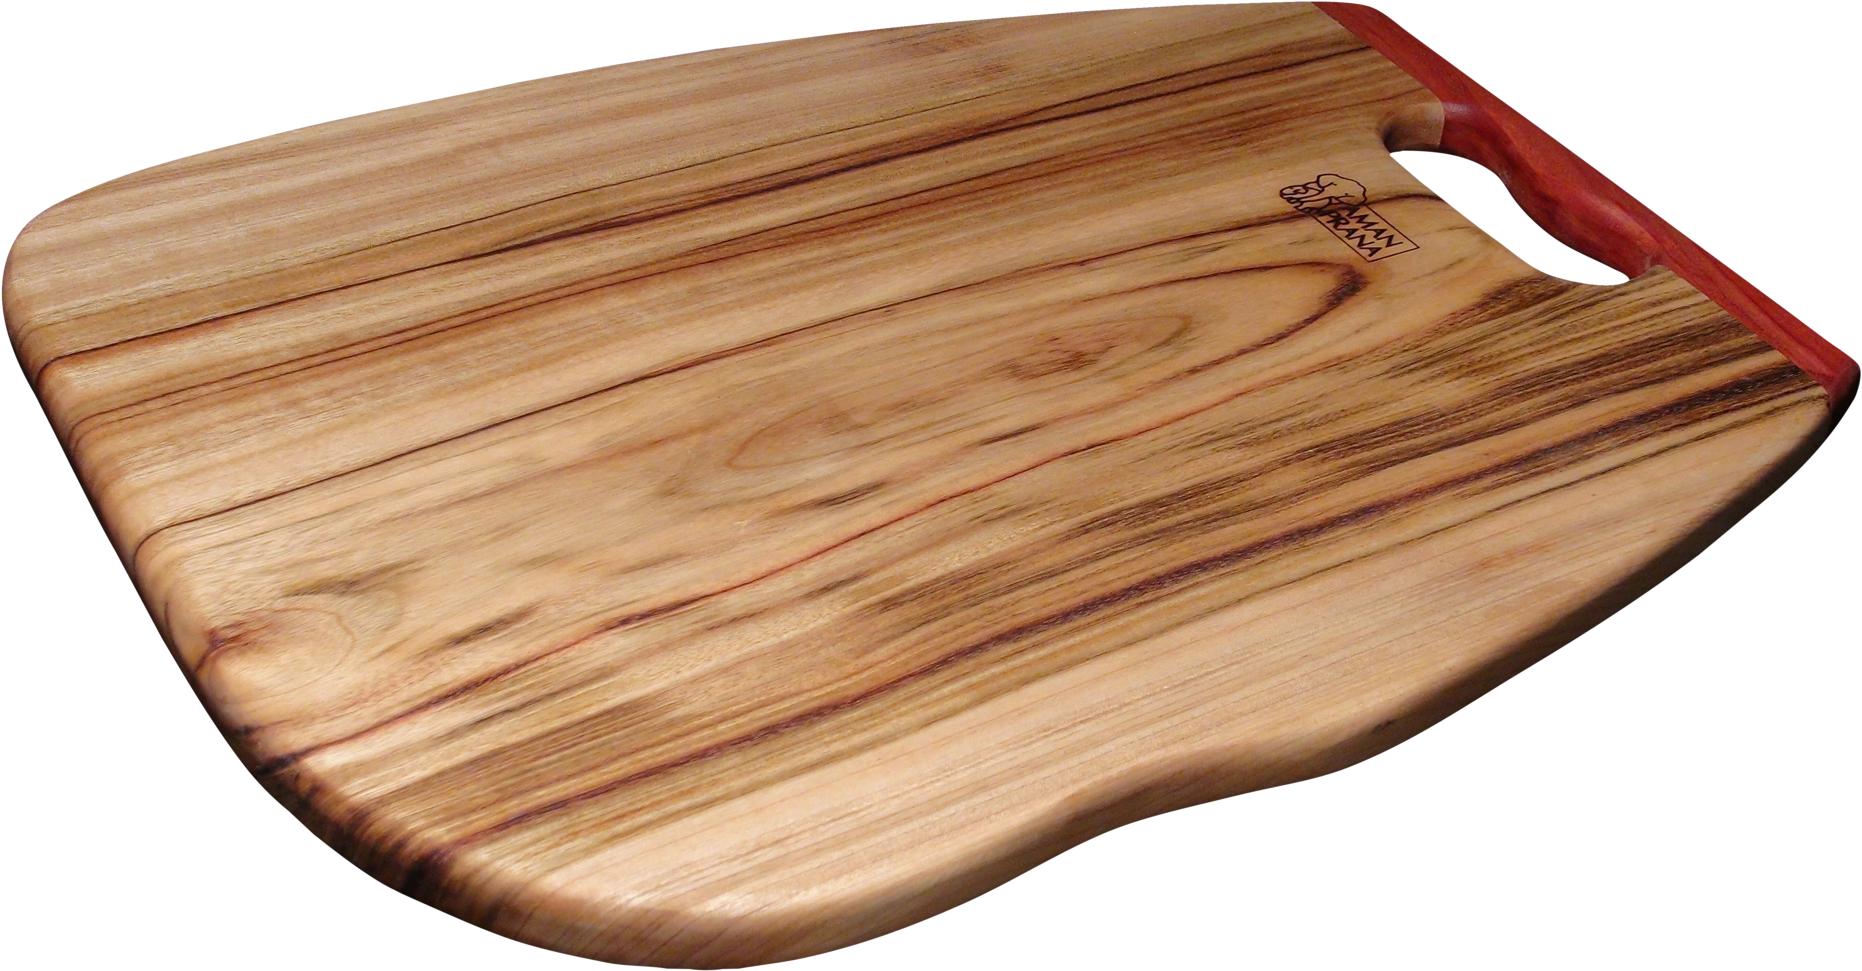 Download Amanprana Qi-board Cutting Board D1 Side - Wooden Cutting Boards Png (1920x1014), Png Download